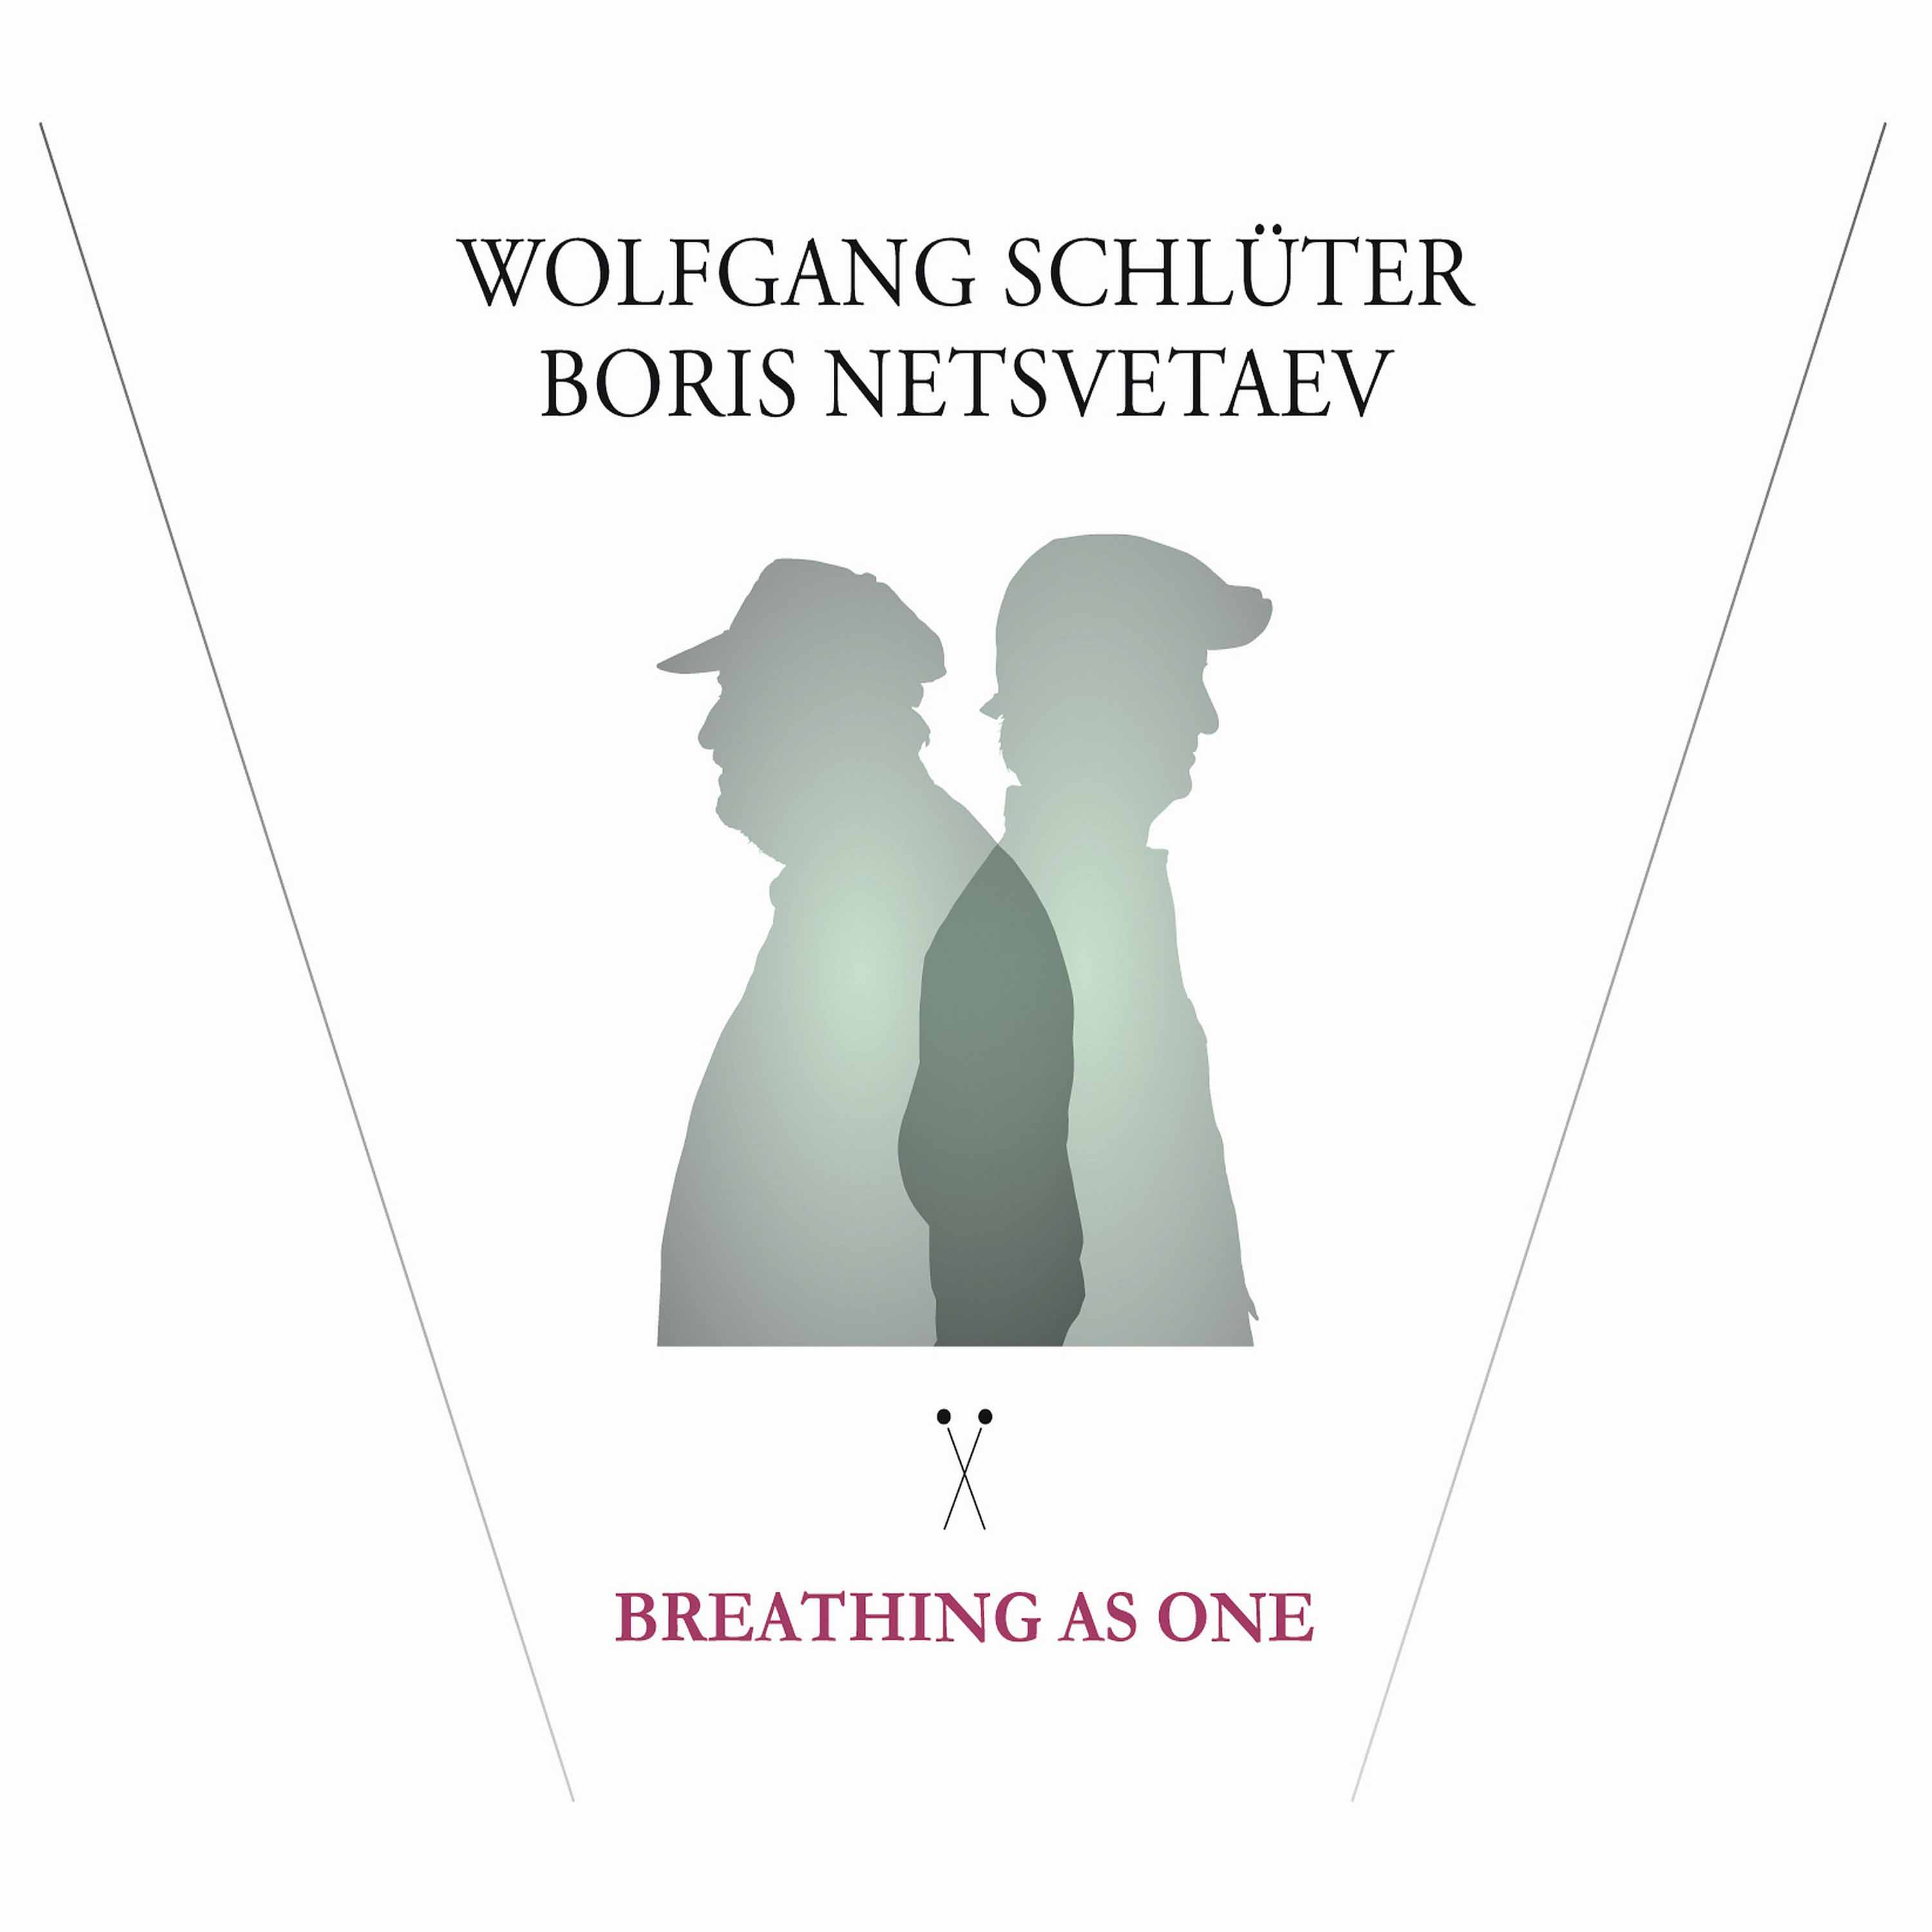 Wolfgang Schluter, Boris Netsvetaev - Breathing As One (2016) [HDTracks FLAC 24bit/96kHz]